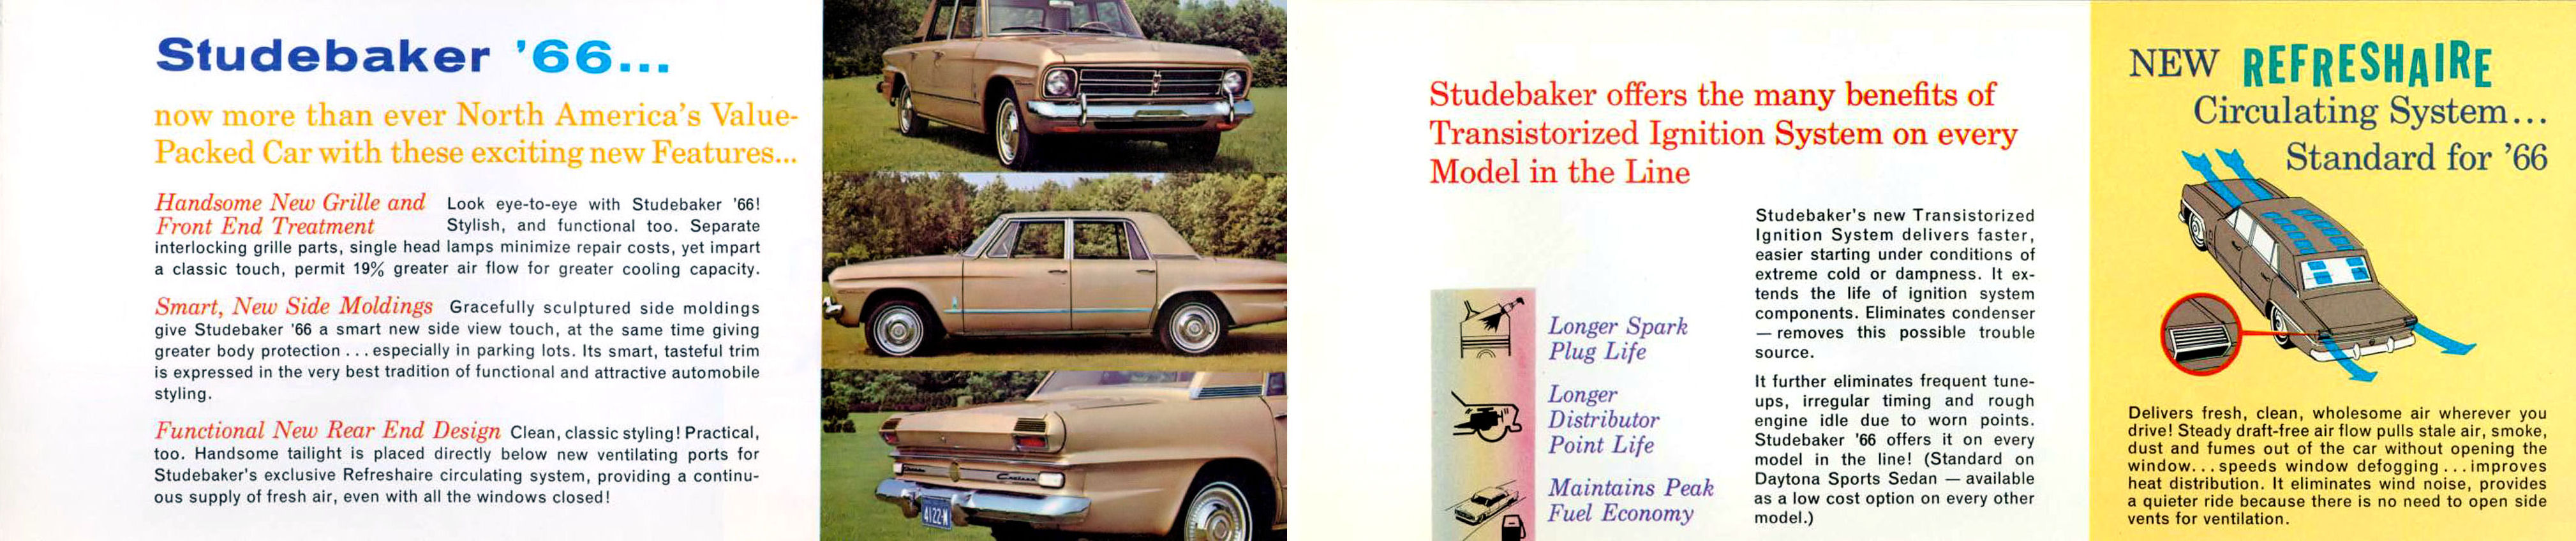 1966_Studebaker-02-03